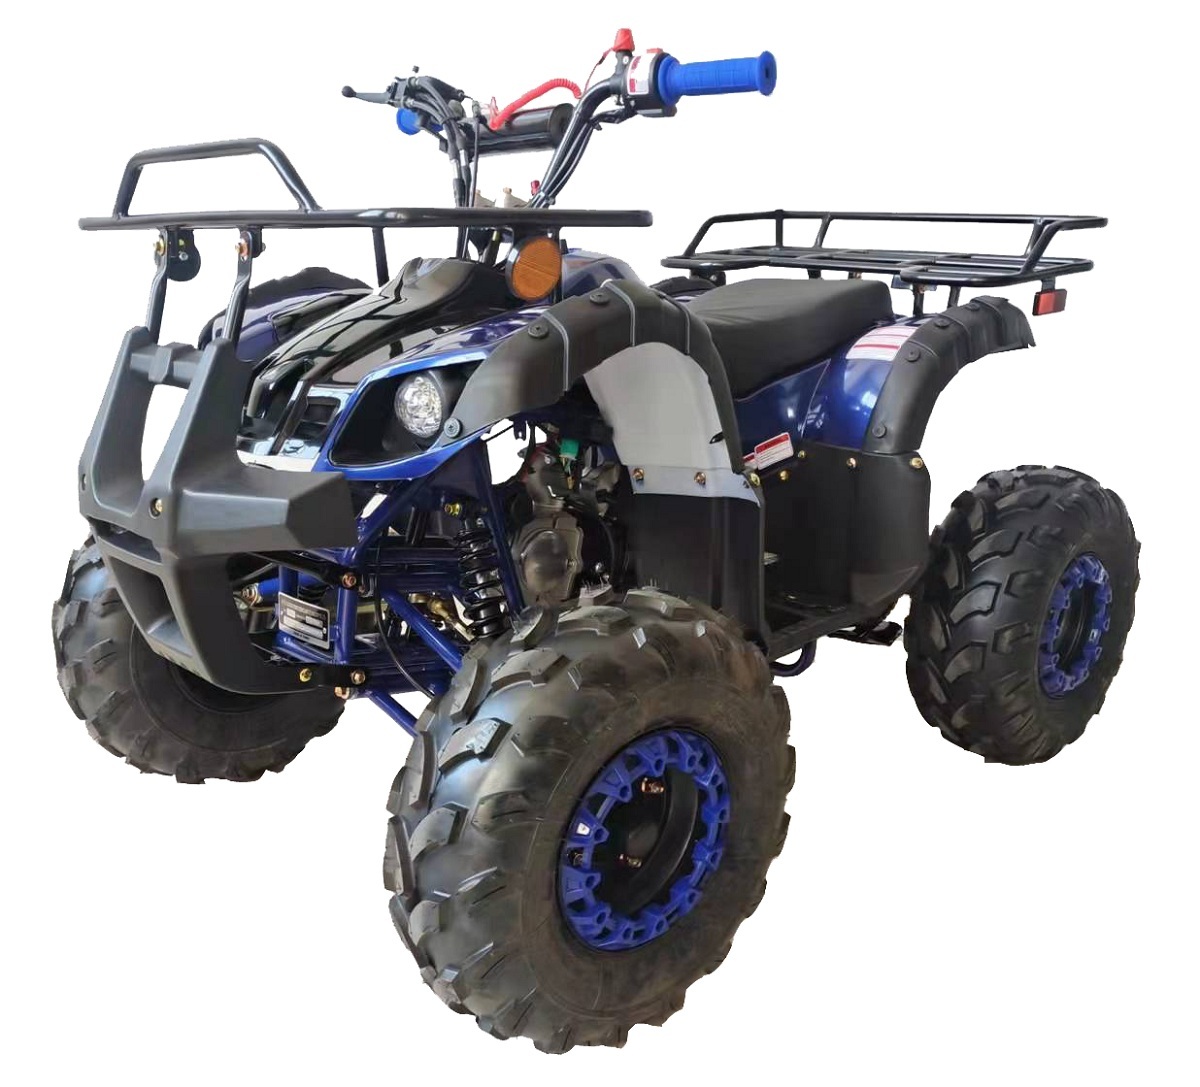 VITACCI RIDER-12 ATV